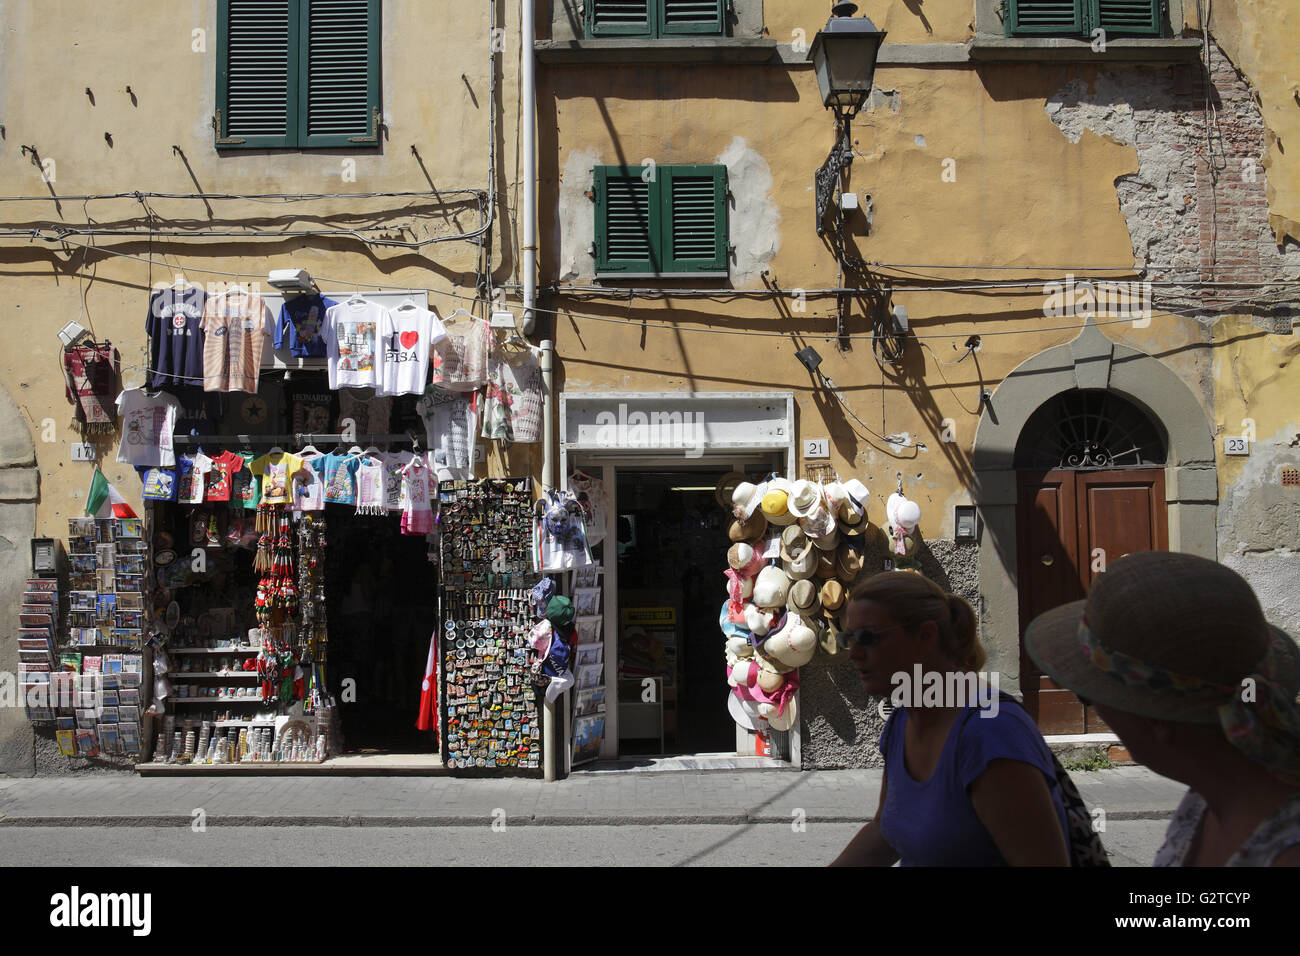 04.08.2015, Pisa, Toskana, Italien - kleine Souvenir-Shop in Pisa. 00P150804D196CAROEX. JPG - nicht für den Verkauf in G E R M A N Y, A U S T R I A S W I T Z E R L A N D [MODEL-RELEASE: Nein, PROPERTY-RELEASE: Nein, (C) Caro Fotoagentur / Muhs, http://www.caro-images.com, info@carofoto.pl - jegliche Nutzung dieses Bildes unterliegt GEMA!] Stockfoto